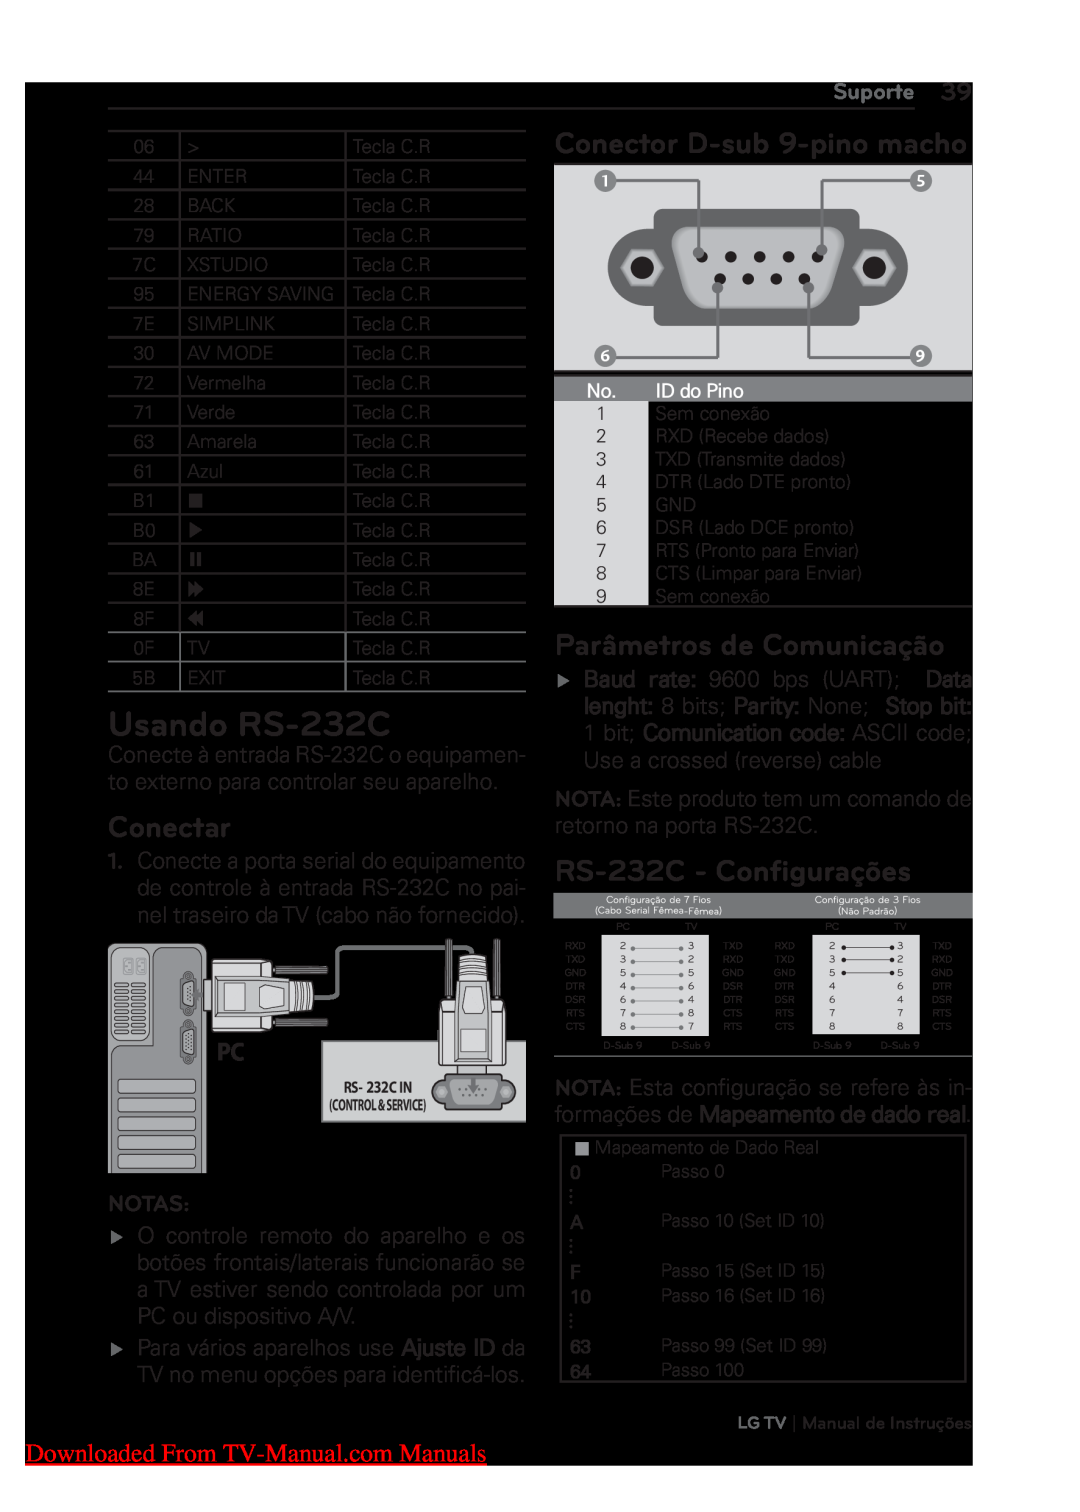 LG Electronics 22/26/32LK311 Usando RS-232C, Conectar, Conector D-sub 9-pino macho, Parâmetros de Comunicação, Suporte 